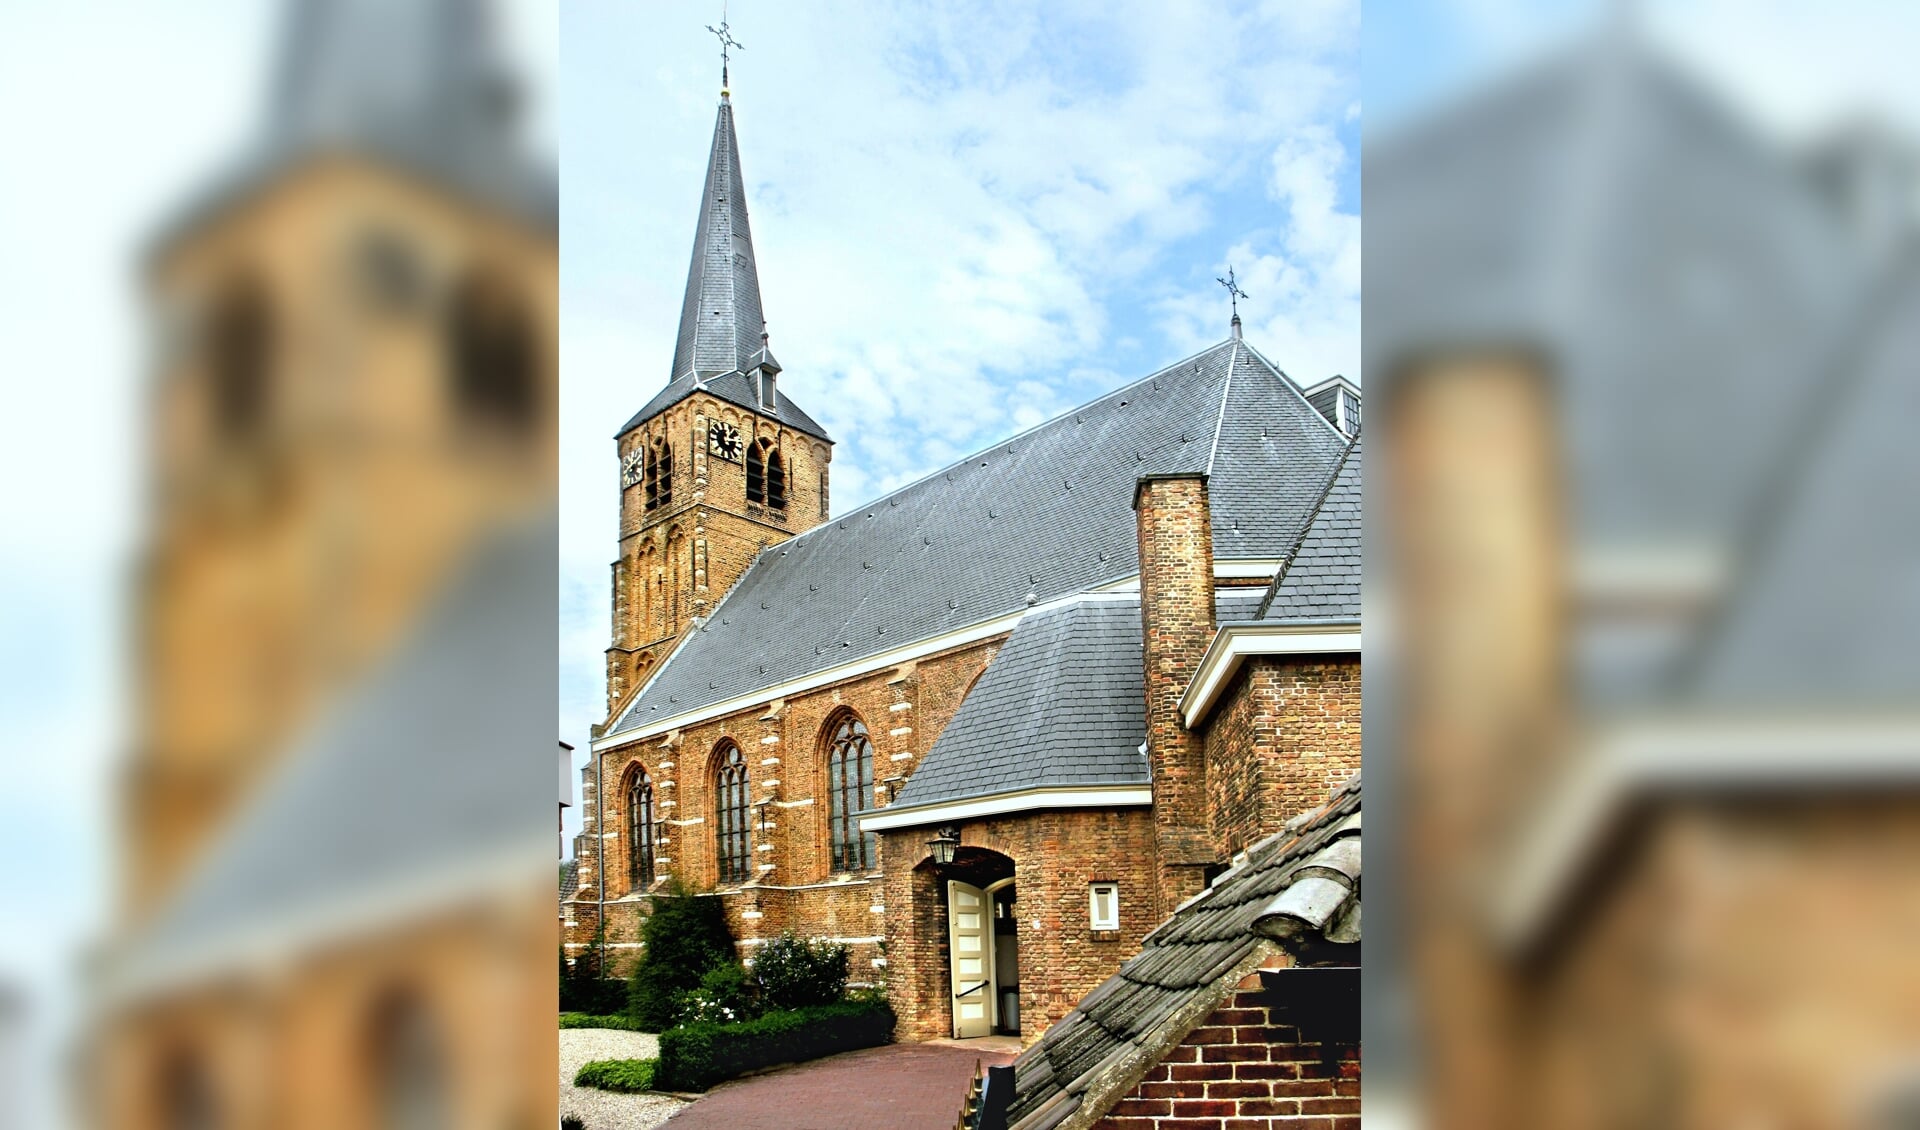 De Oude Kerk is opgetrokken uit ijsselsteentjes, ooit gefabriceerd door een Nieuwerkerkse steenfabriek.